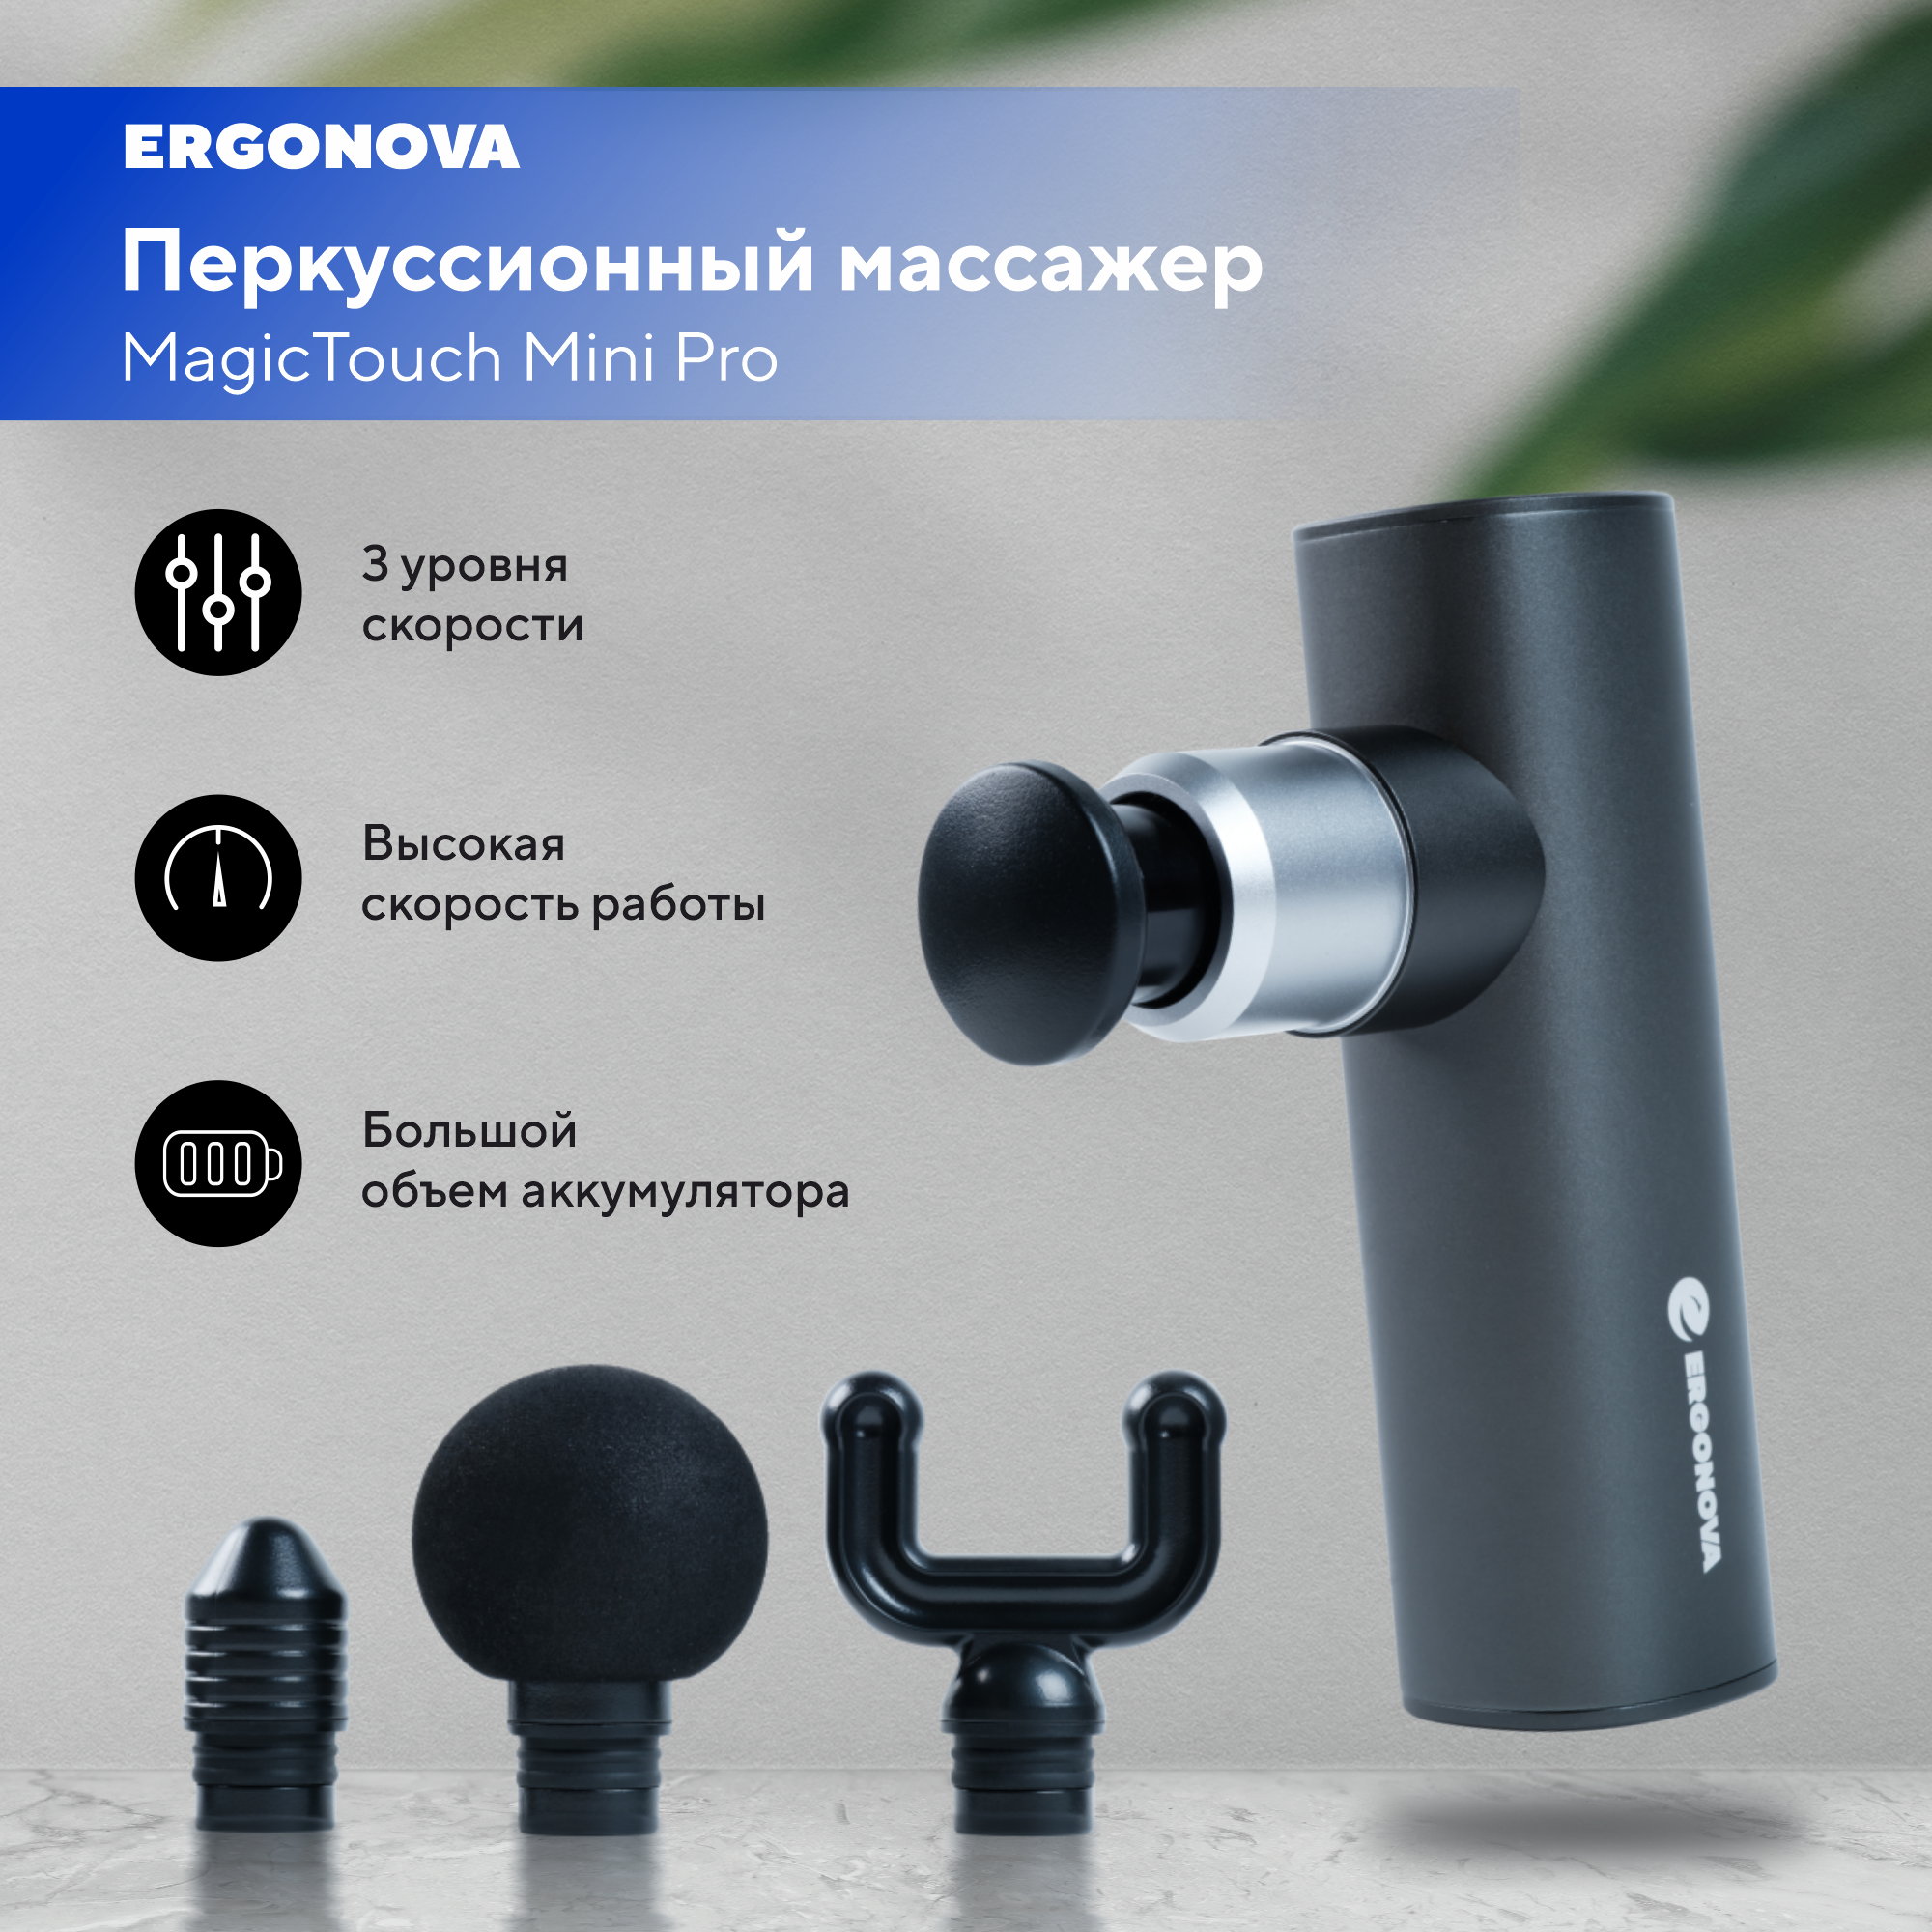 Перкуссионный массажер Ergonova MagicTouch Mini Pro